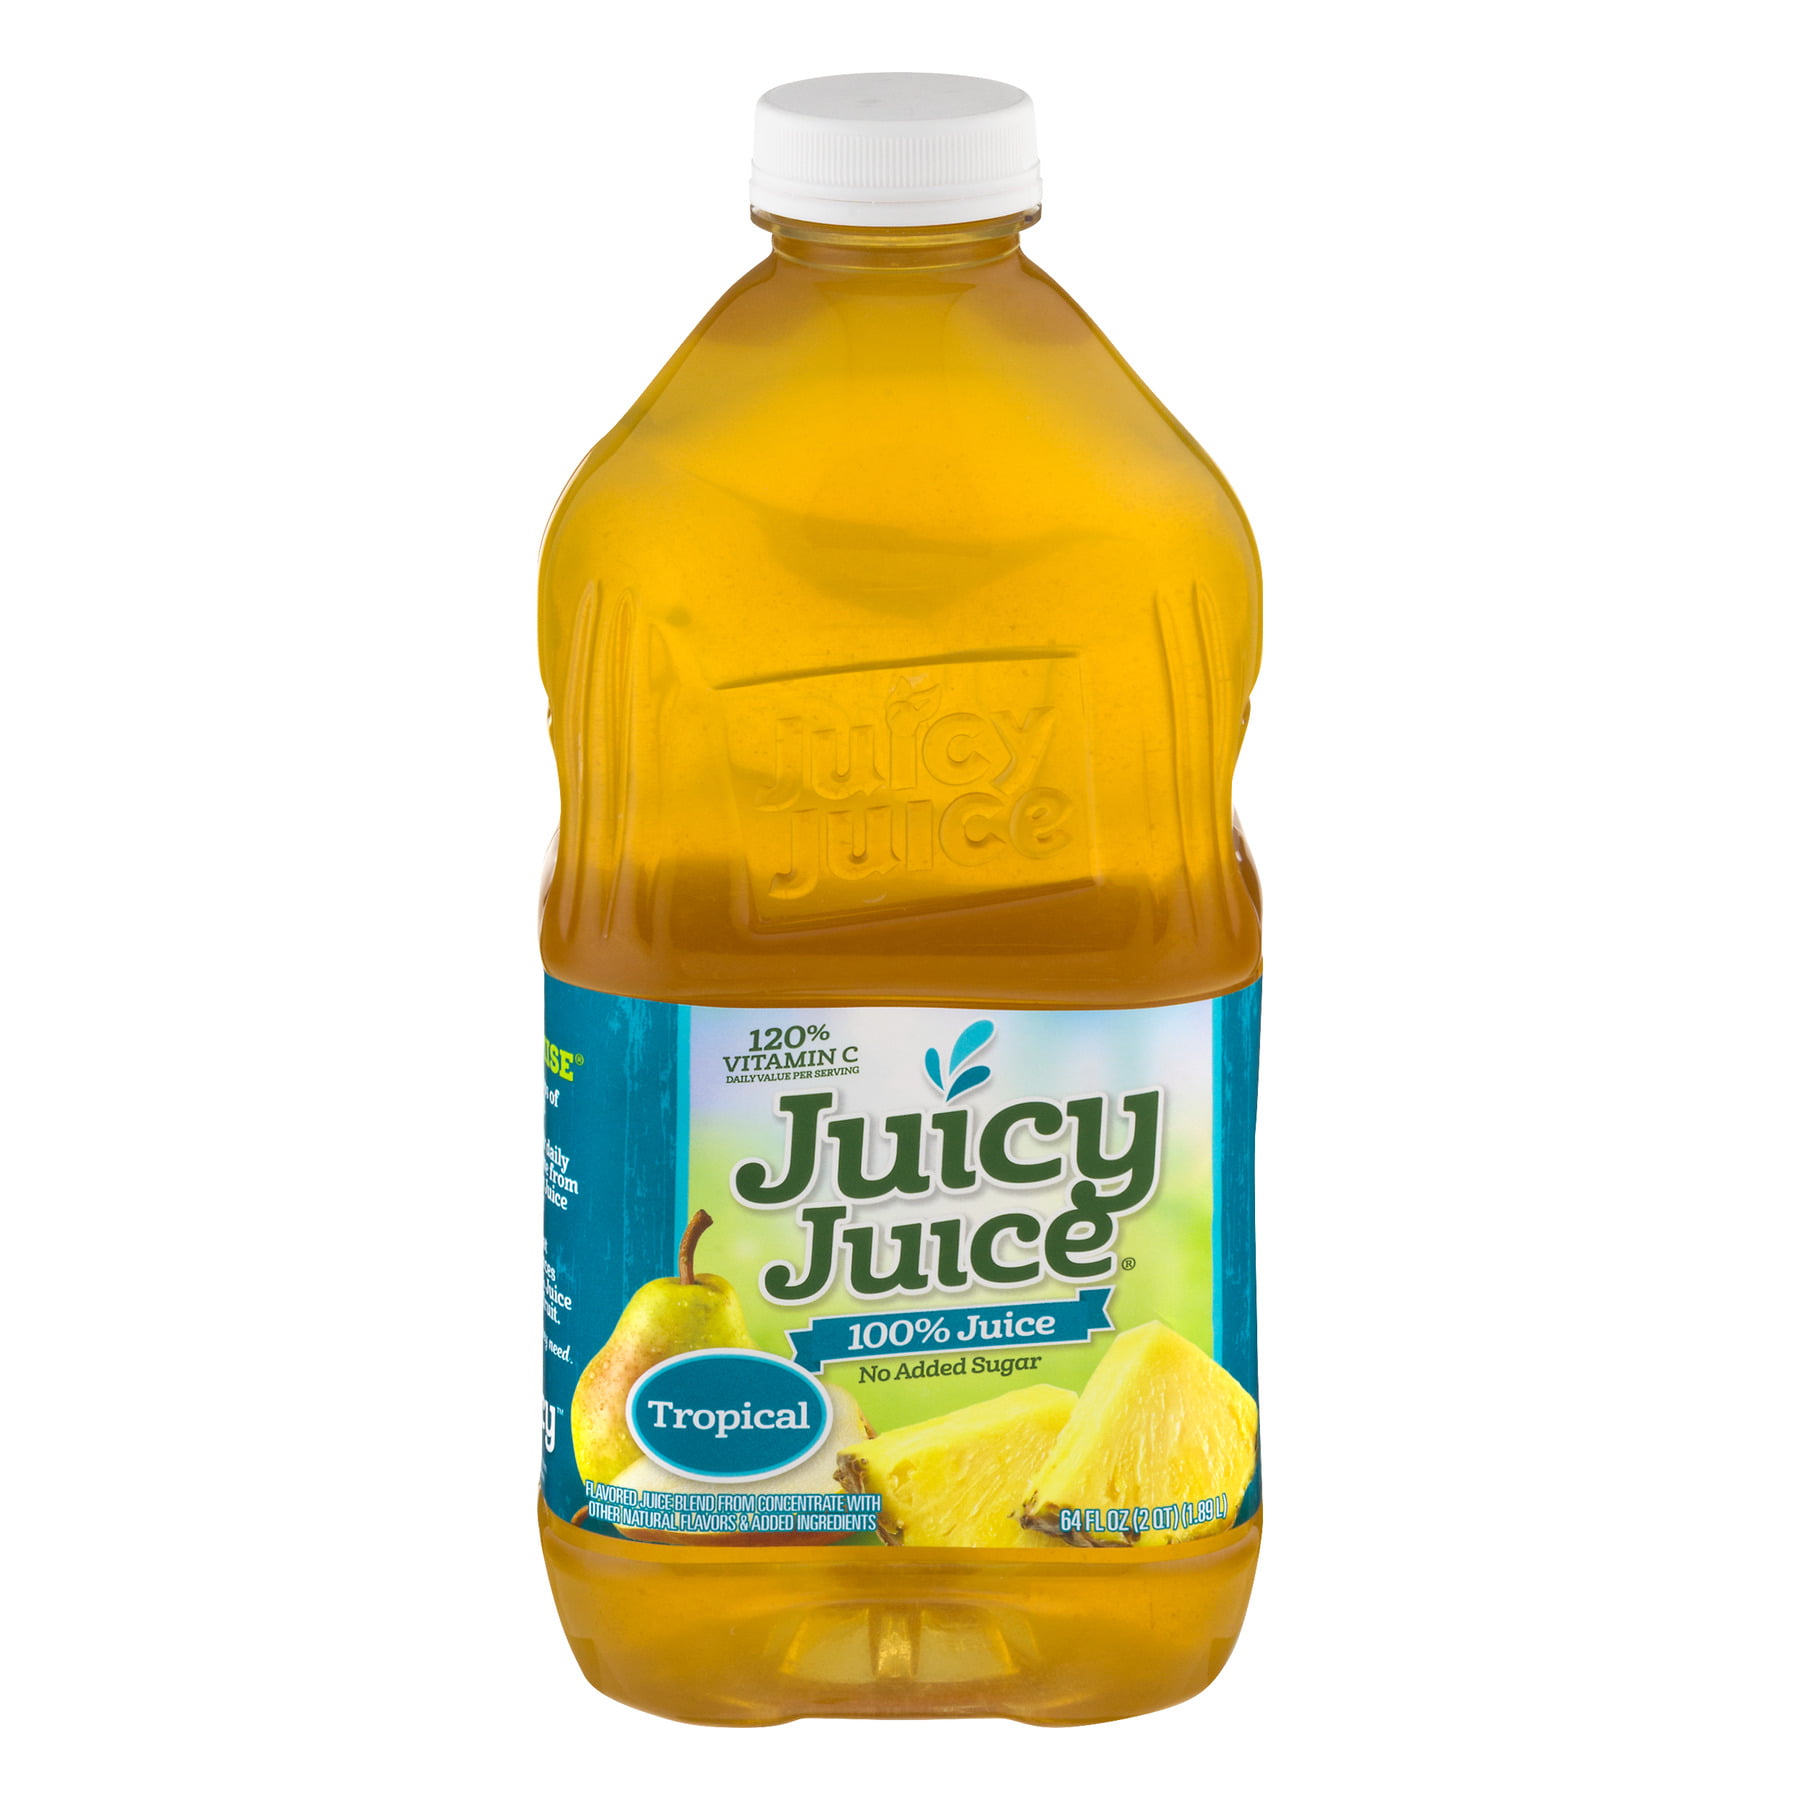 Juicy juice 25